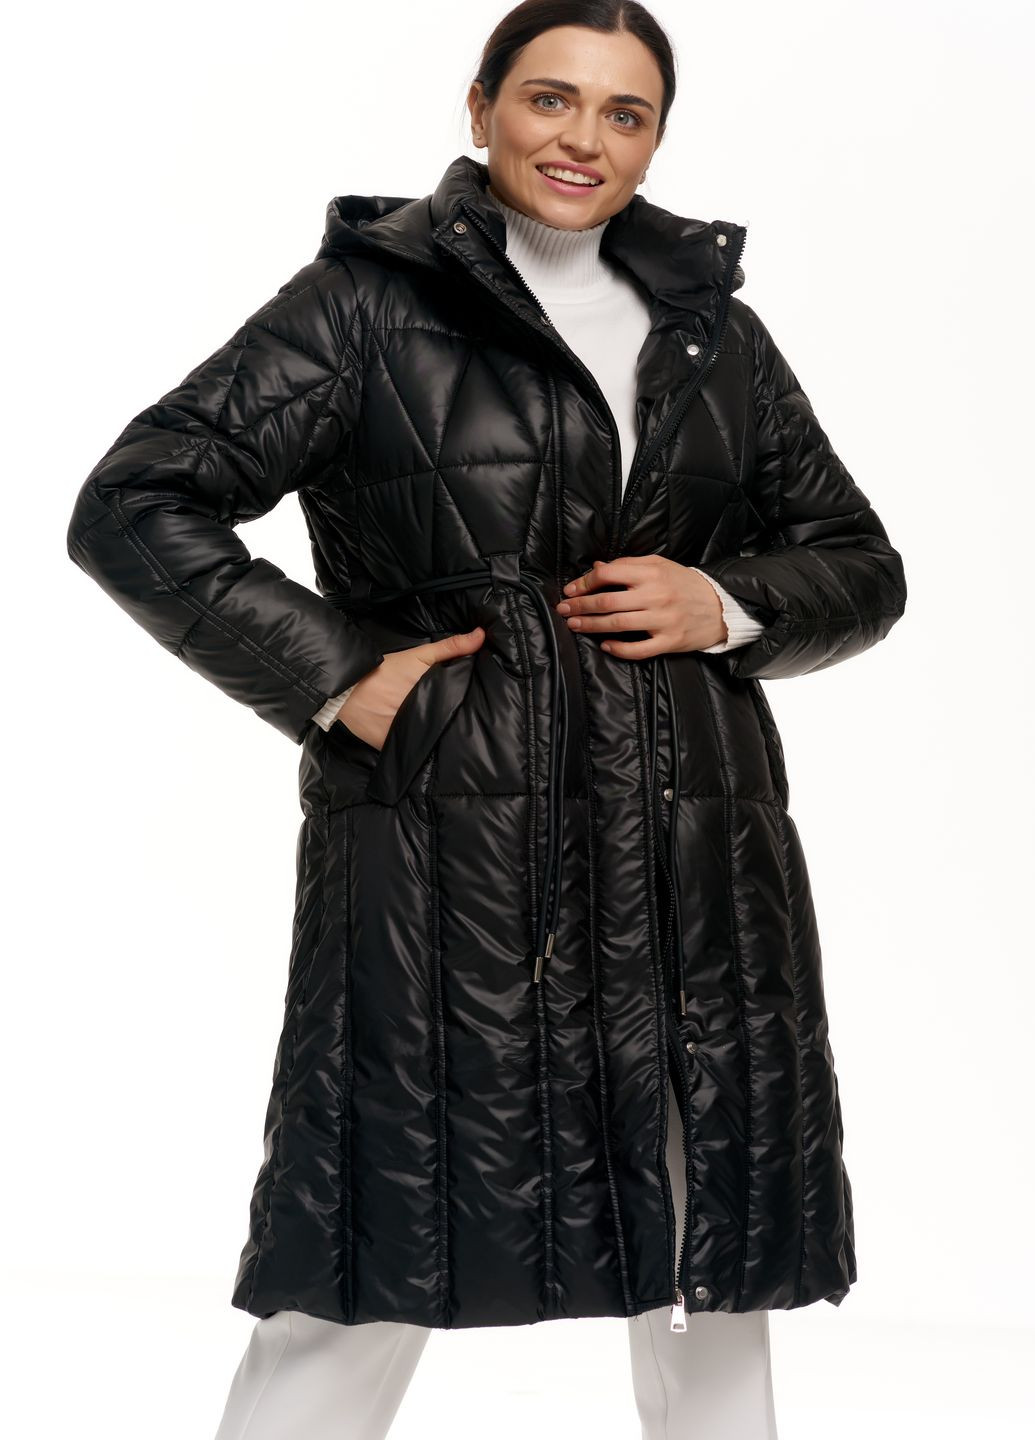 Черная зимняя женский удлиненный пуховик с капюшоном натуральный водоотталкивающий пух зима осень 985 черный Actors